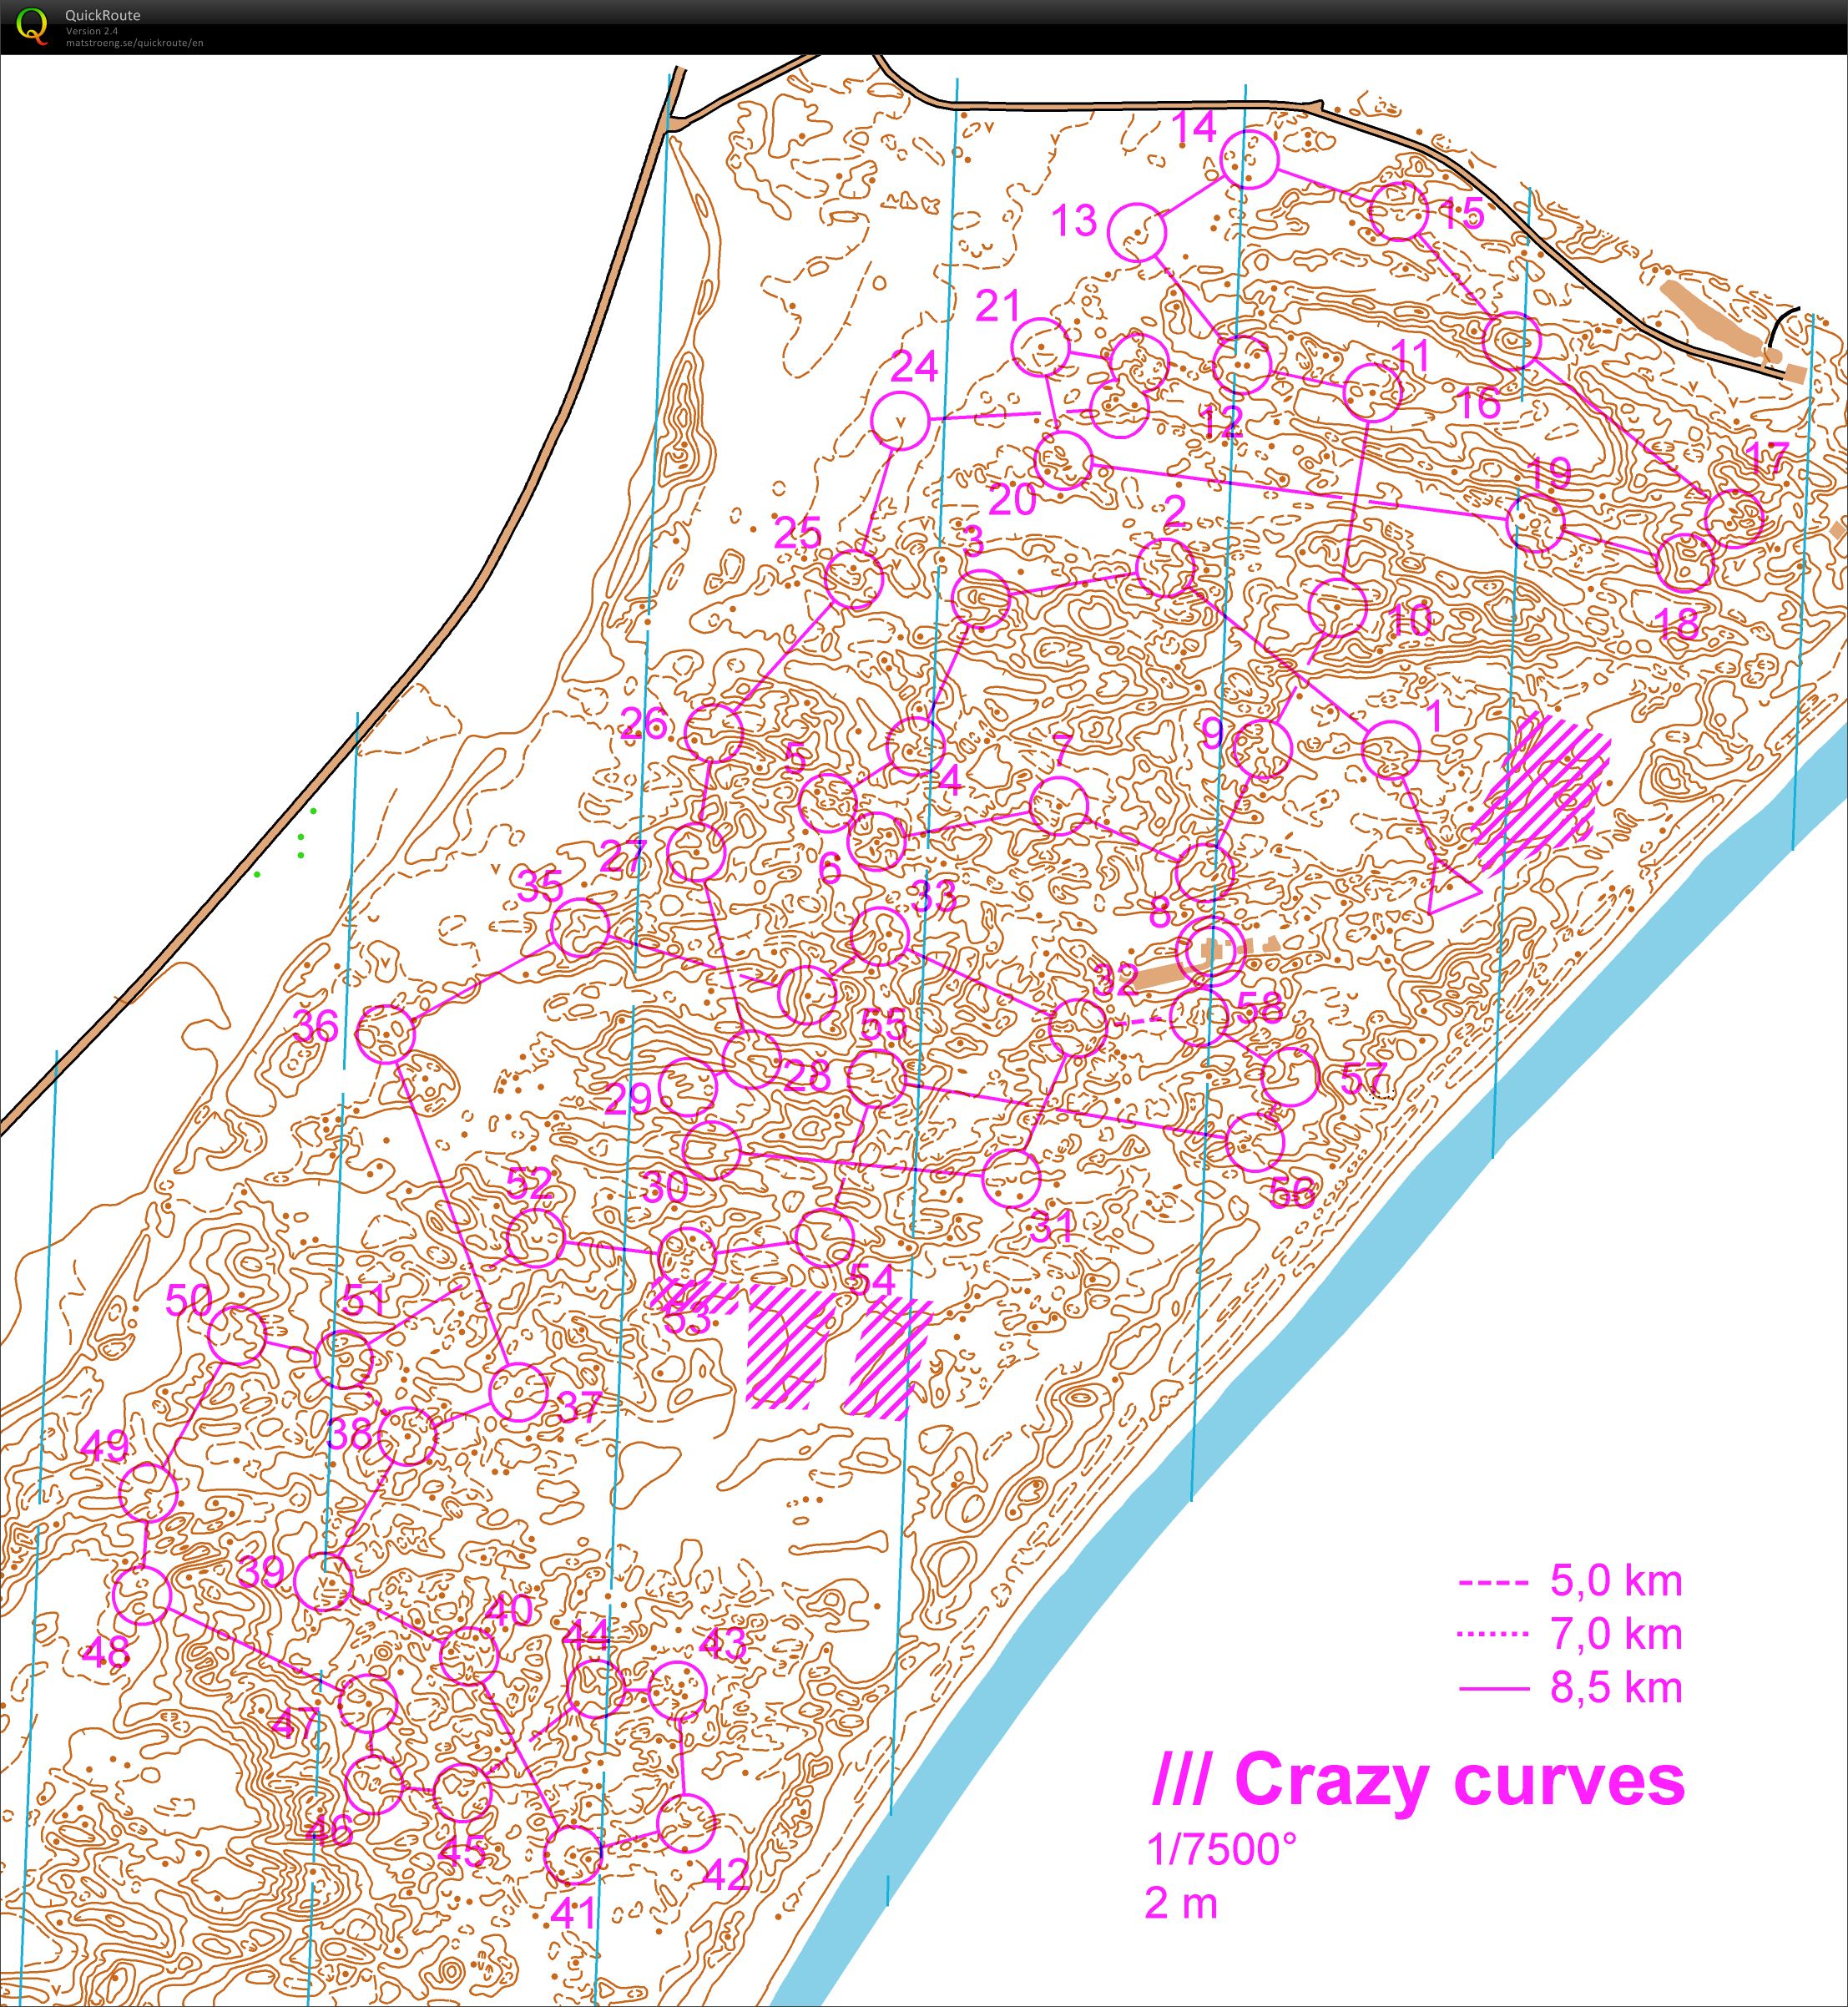 Crazy curves south (2012-08-17)